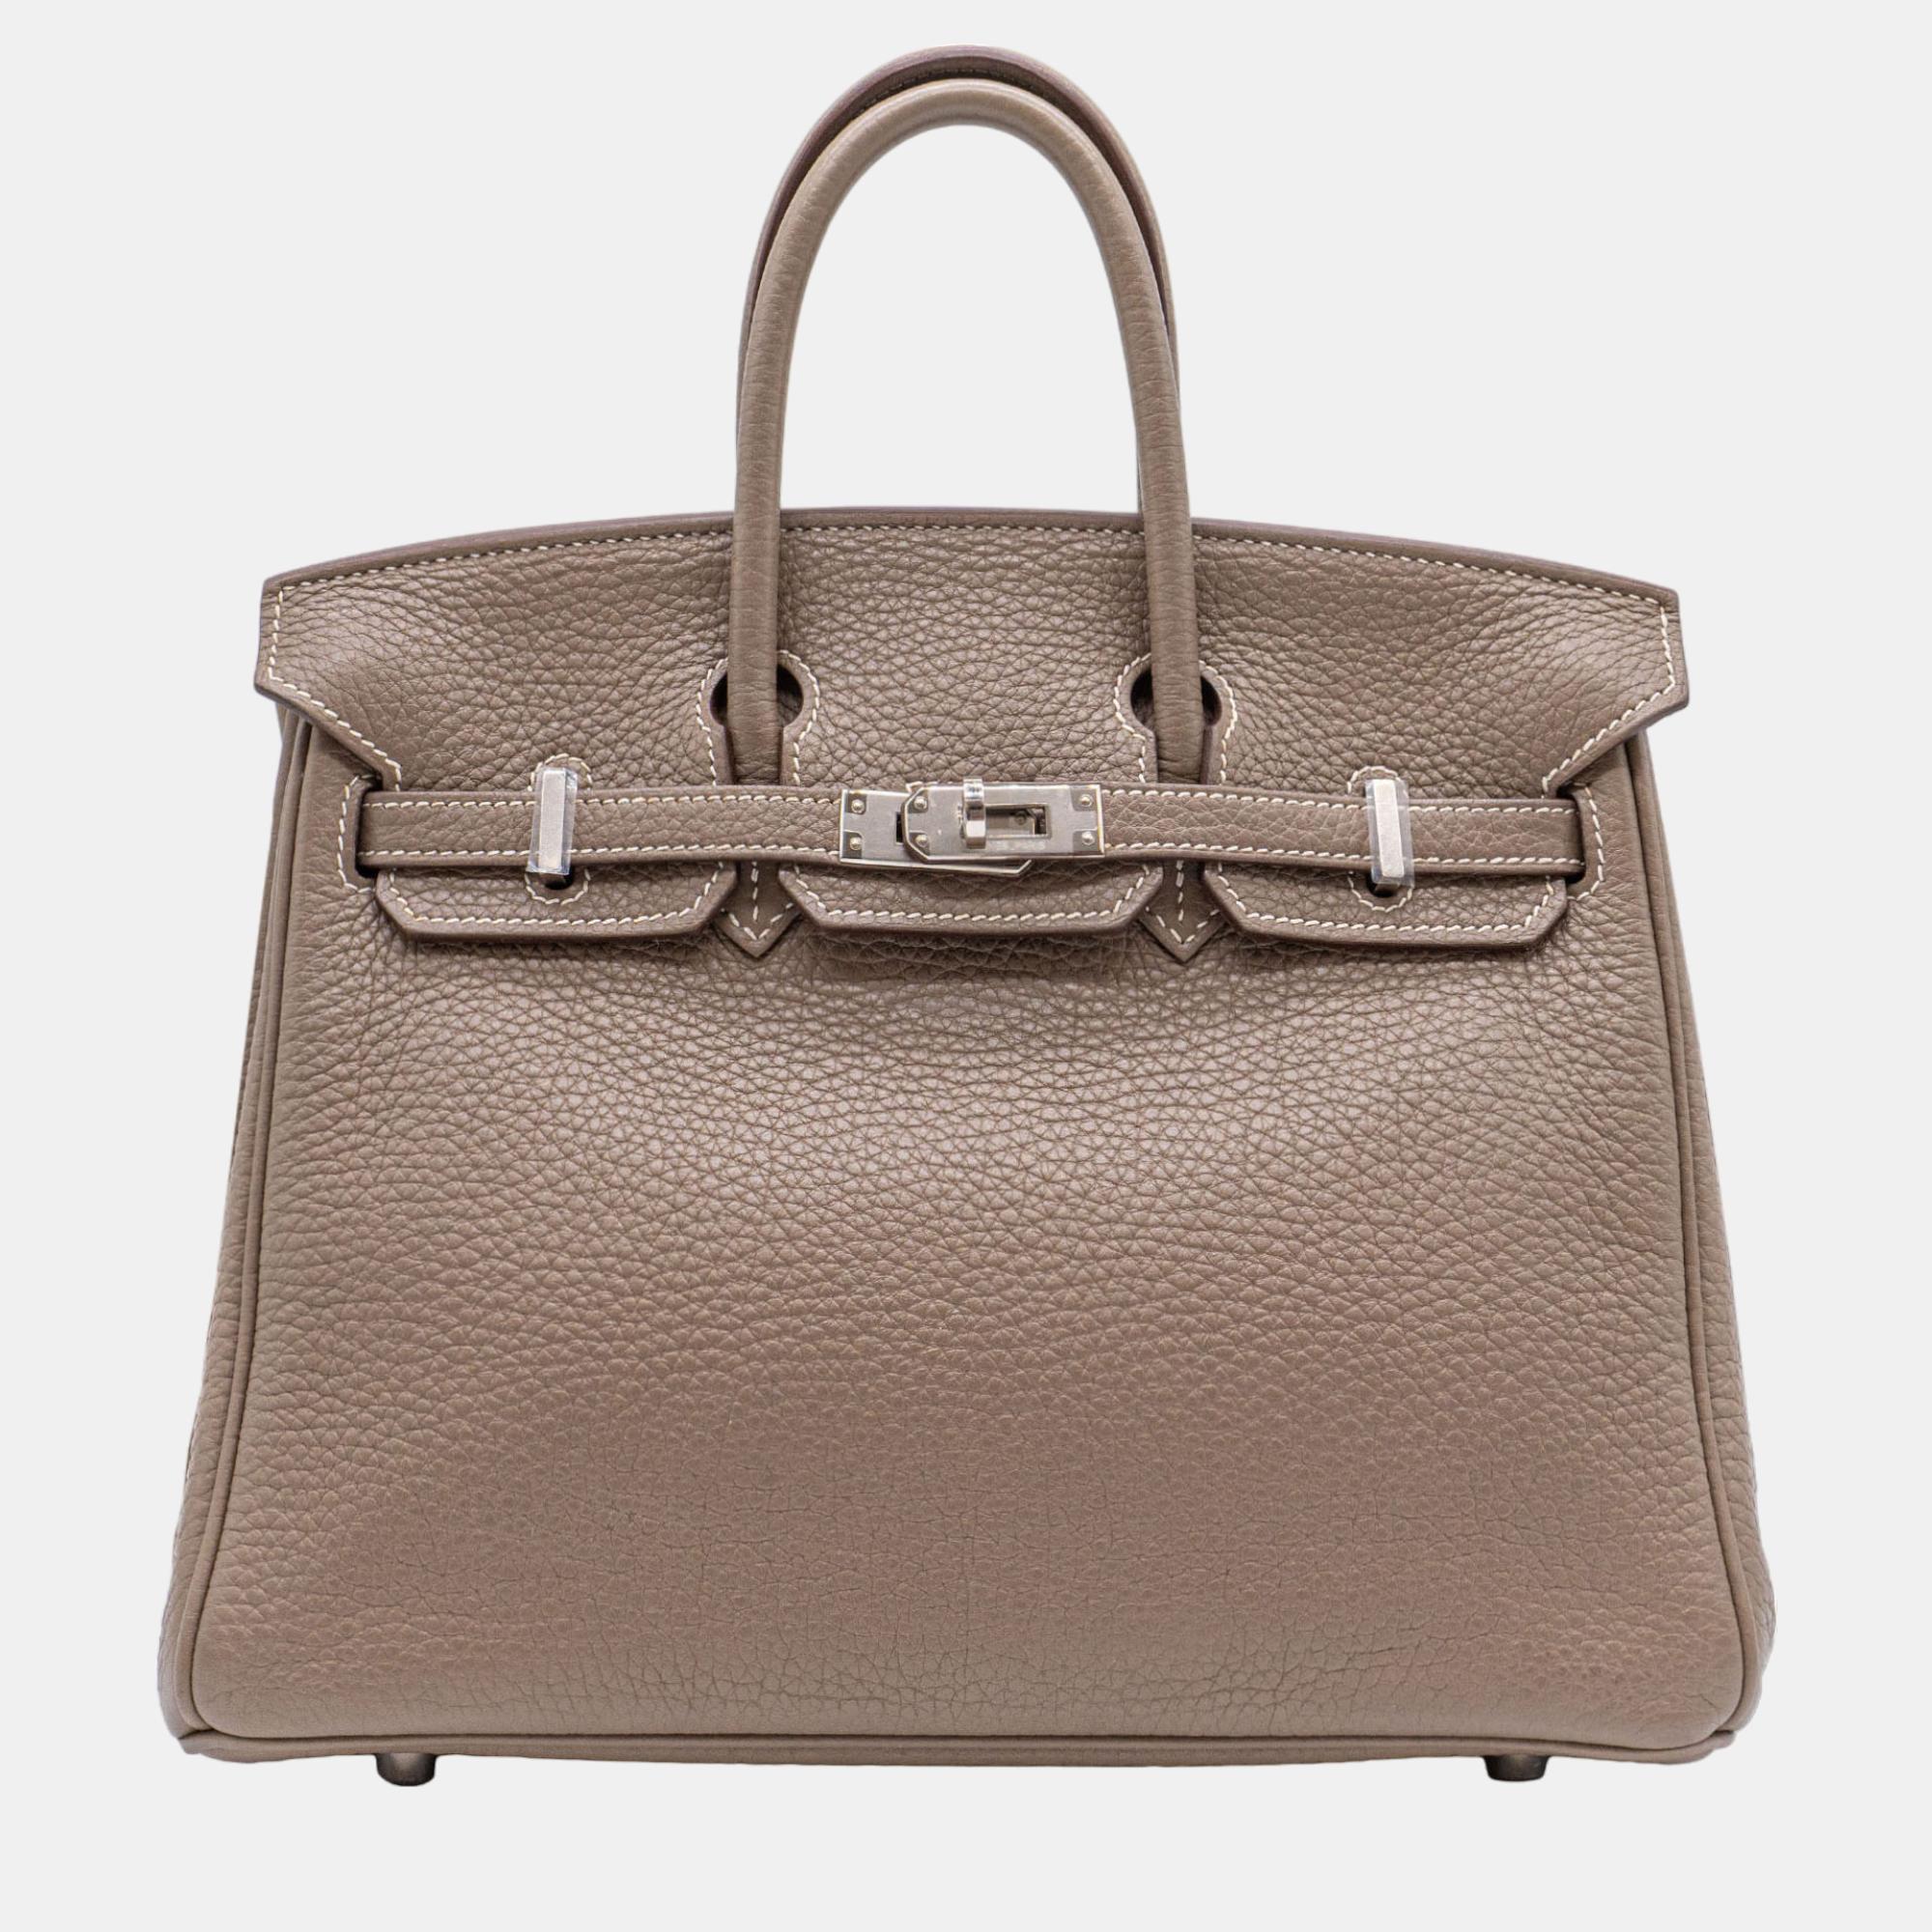 

Hermès Birkin 25 Etoupe Togo with PHW Bag, Grey